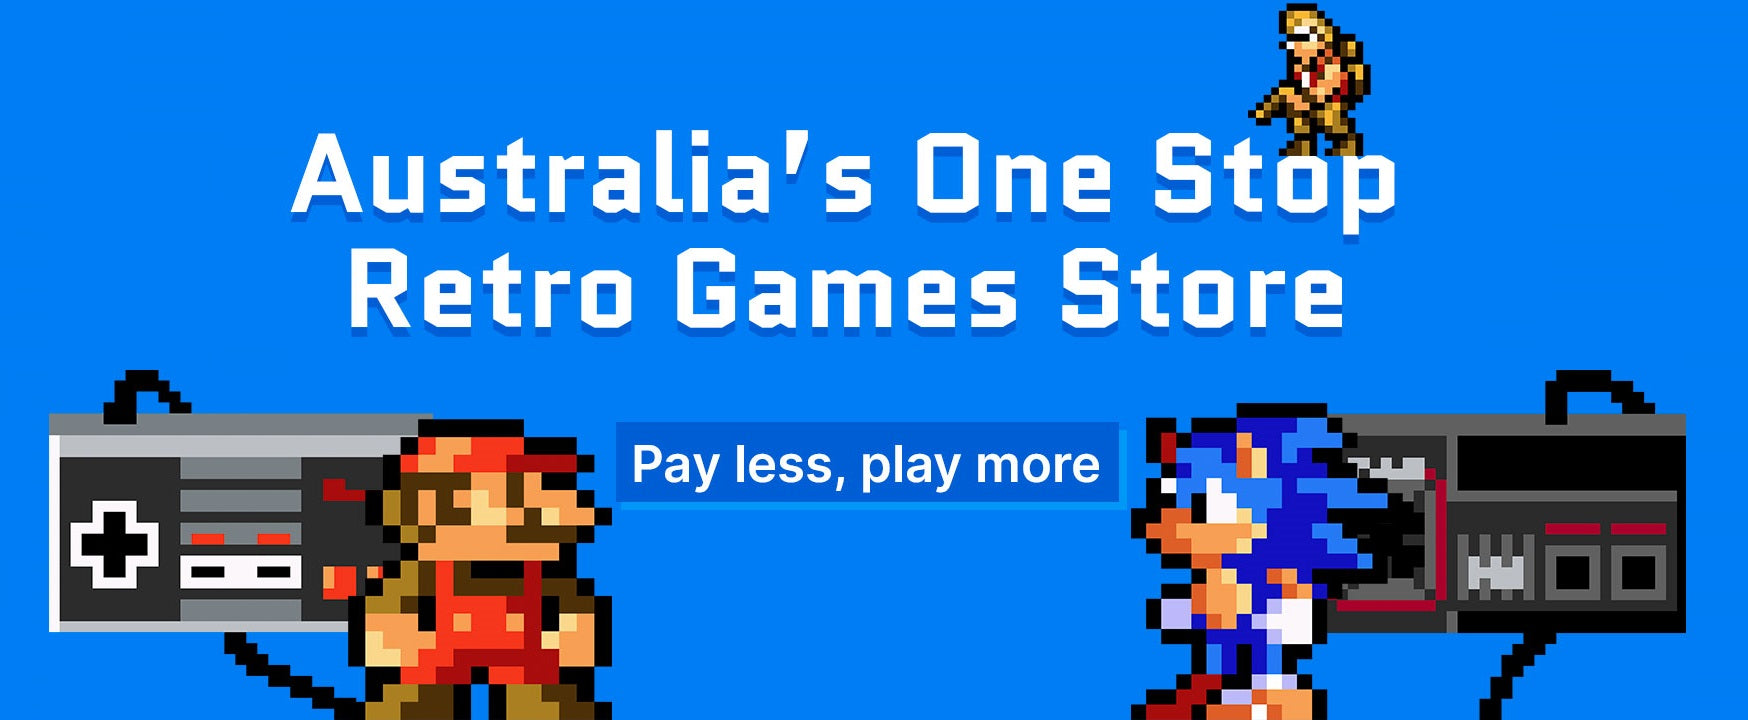 Retro Video Games Store retrosales.com.au